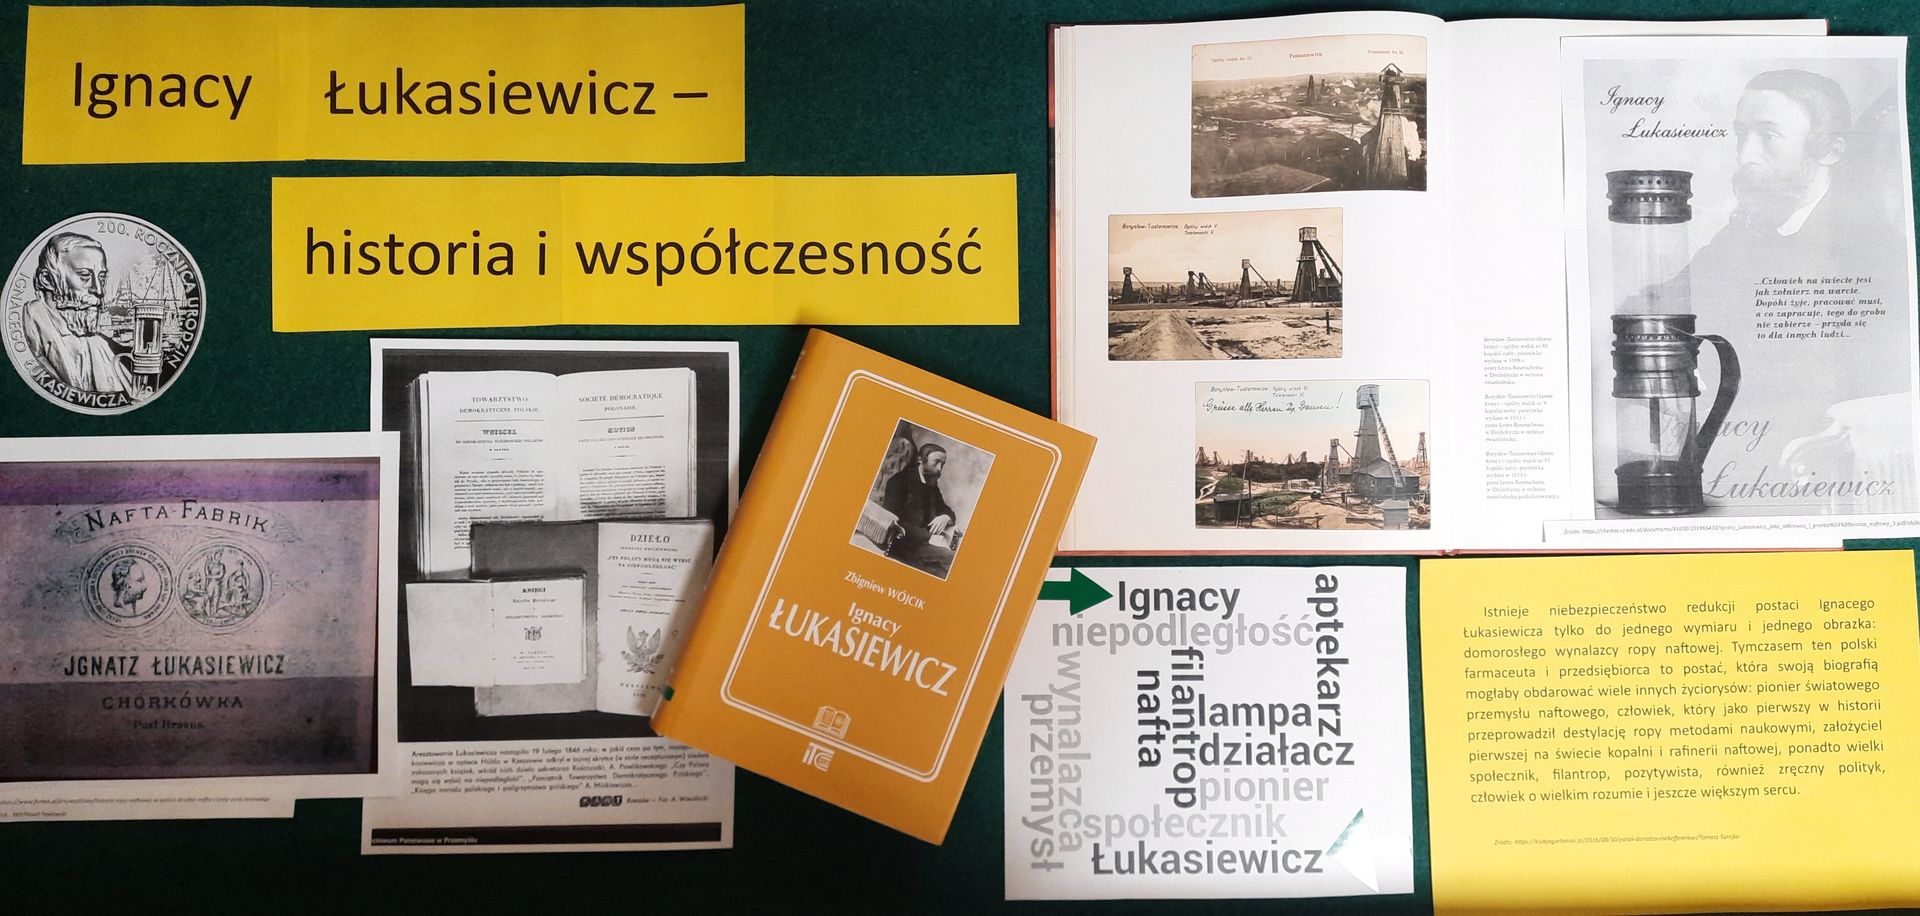 Informacje na temat Ignacego Łukasiewicza 